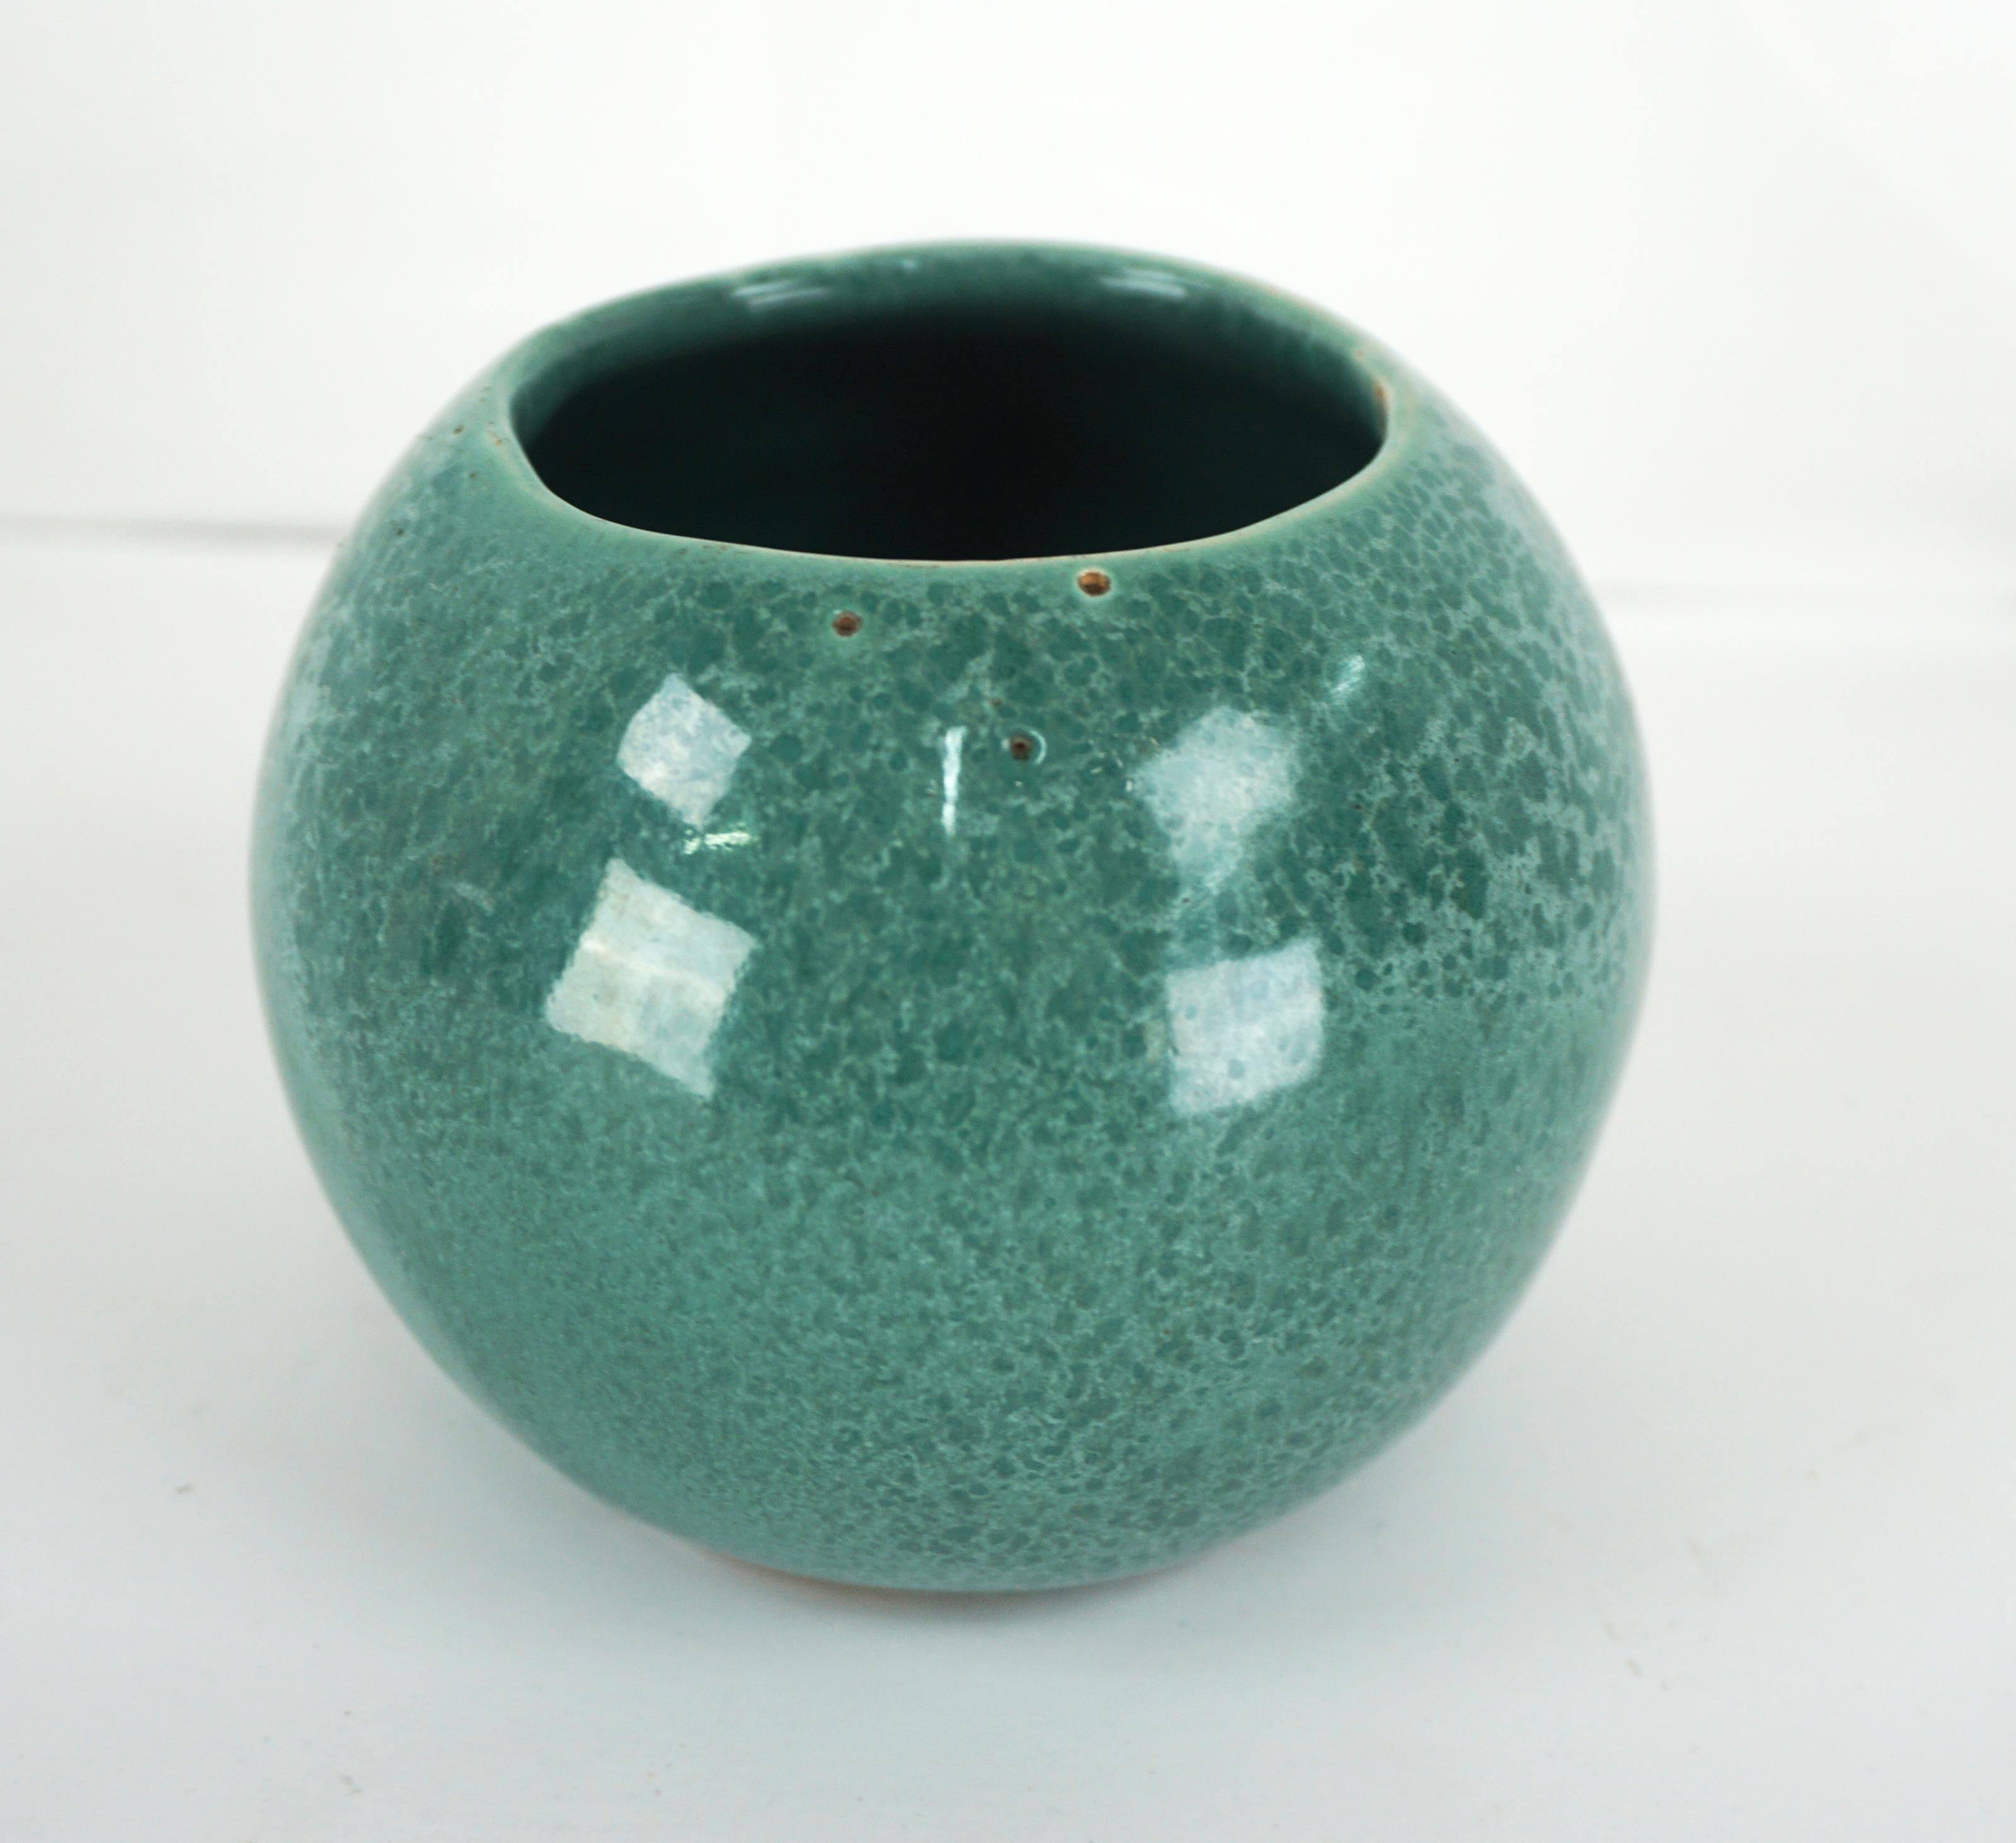 Charmant petit bol à glaçure brillante vert truite de Van Briggle Pottery, vers les années 1920. Nous pensons qu'étant donné la simplicité de la coupe, qui a été jetée à la main, il s'agit peut-être d'une expérience de développement de la glaçure.